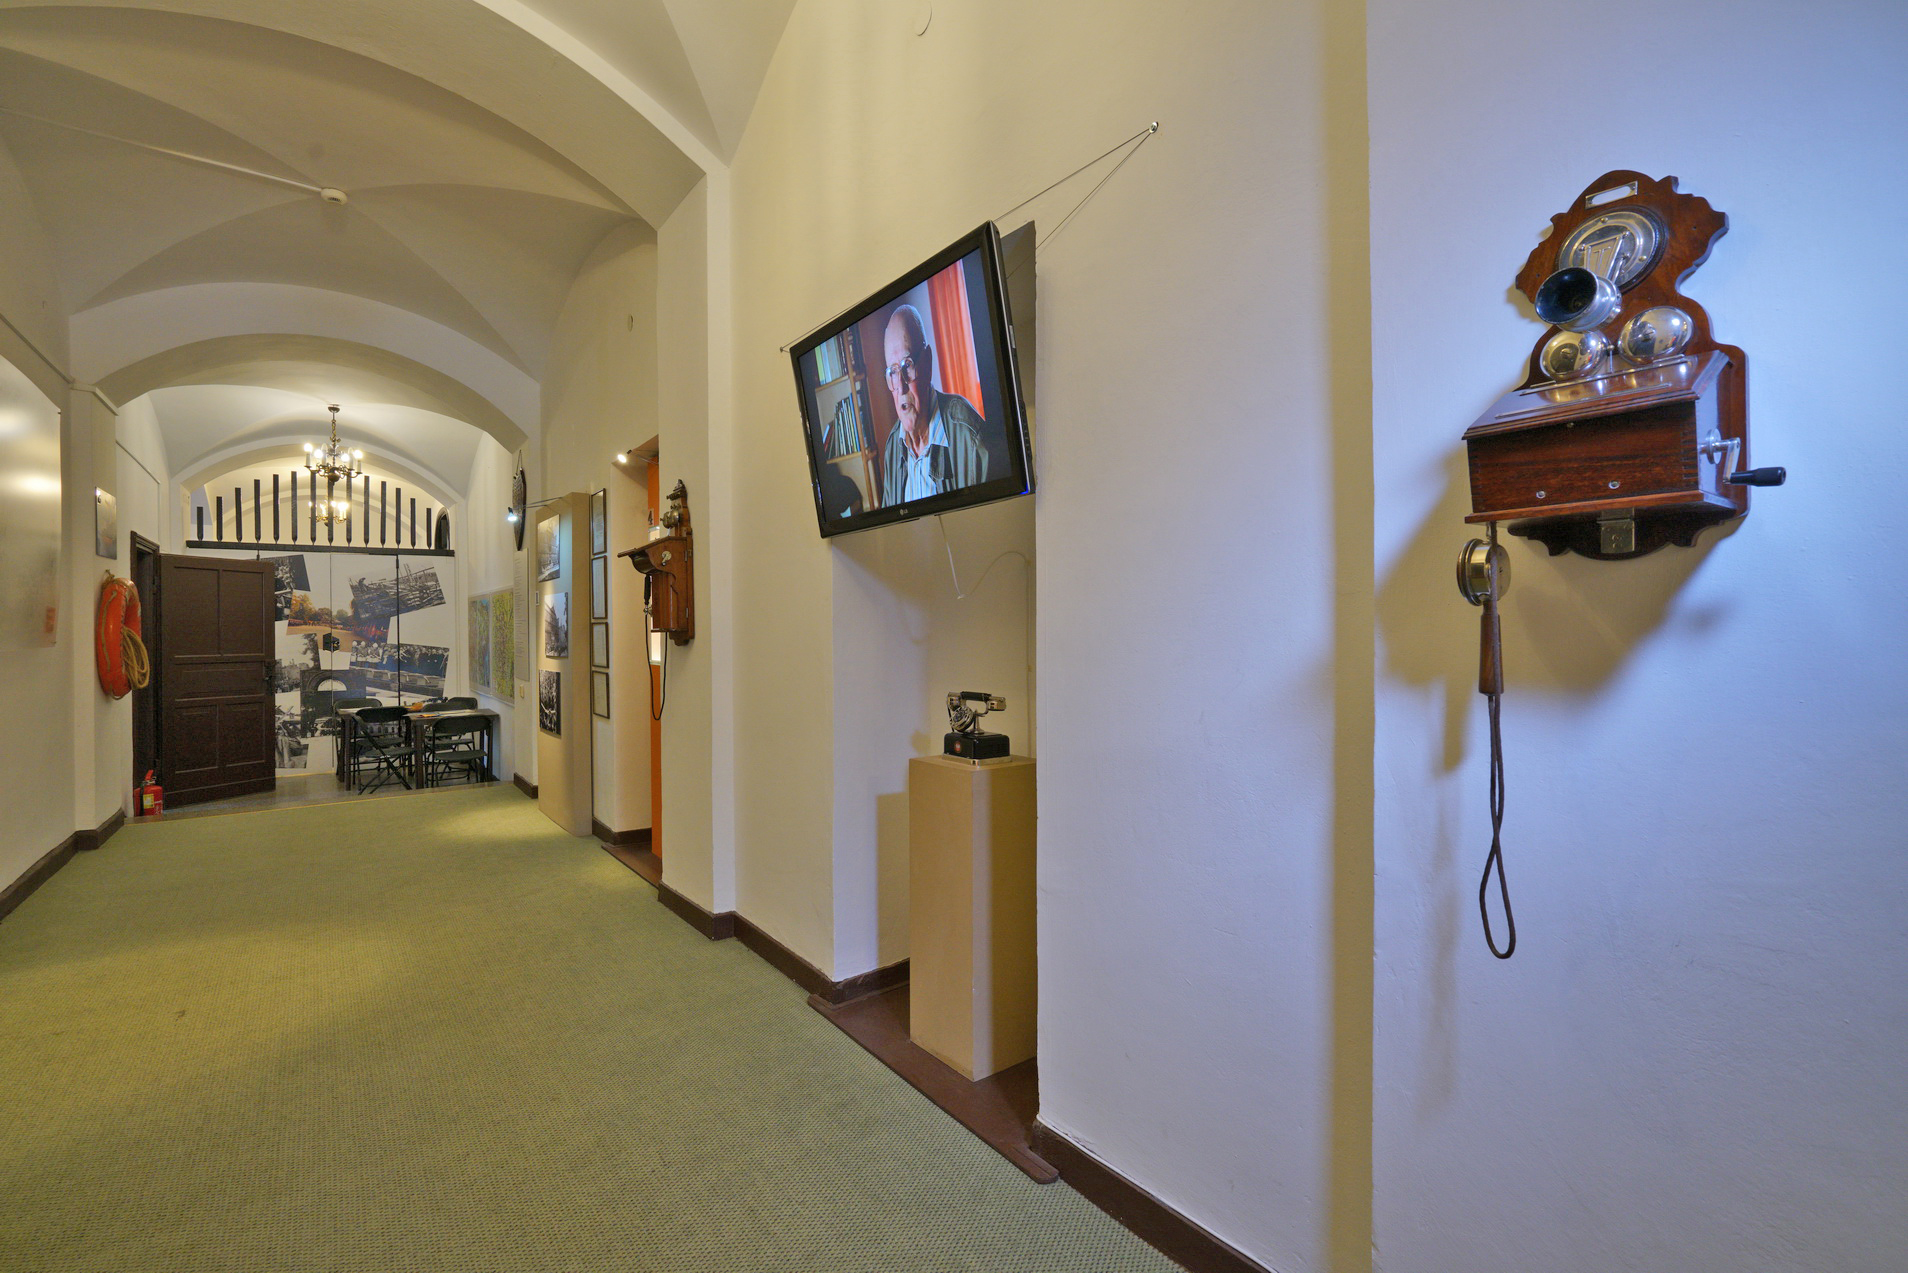 Wystawa w Korytarzu. Na ścianie zawieszono aparaty telefoniczne, pomiędzy nimi jeden ustawiony cokole. Nad cokołem zawieszono ekran, wyświetla film. W głębi korytarza widać stół i krzesła.